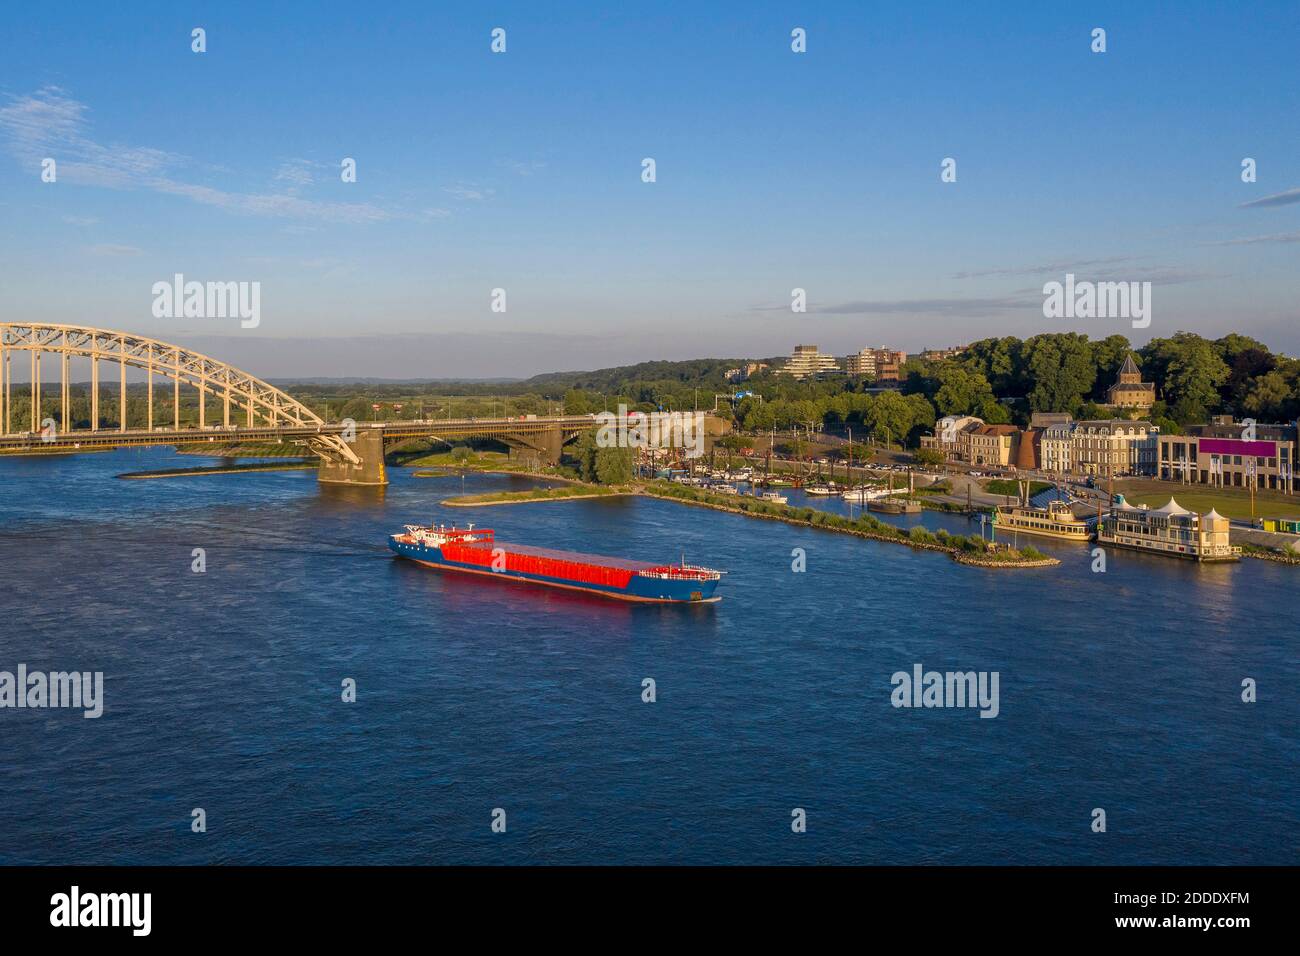 Países Bajos, Gelderland, Nijmegen, Vista aérea del barco de contenedores navegando por el puente sobre el río Waal Foto de stock